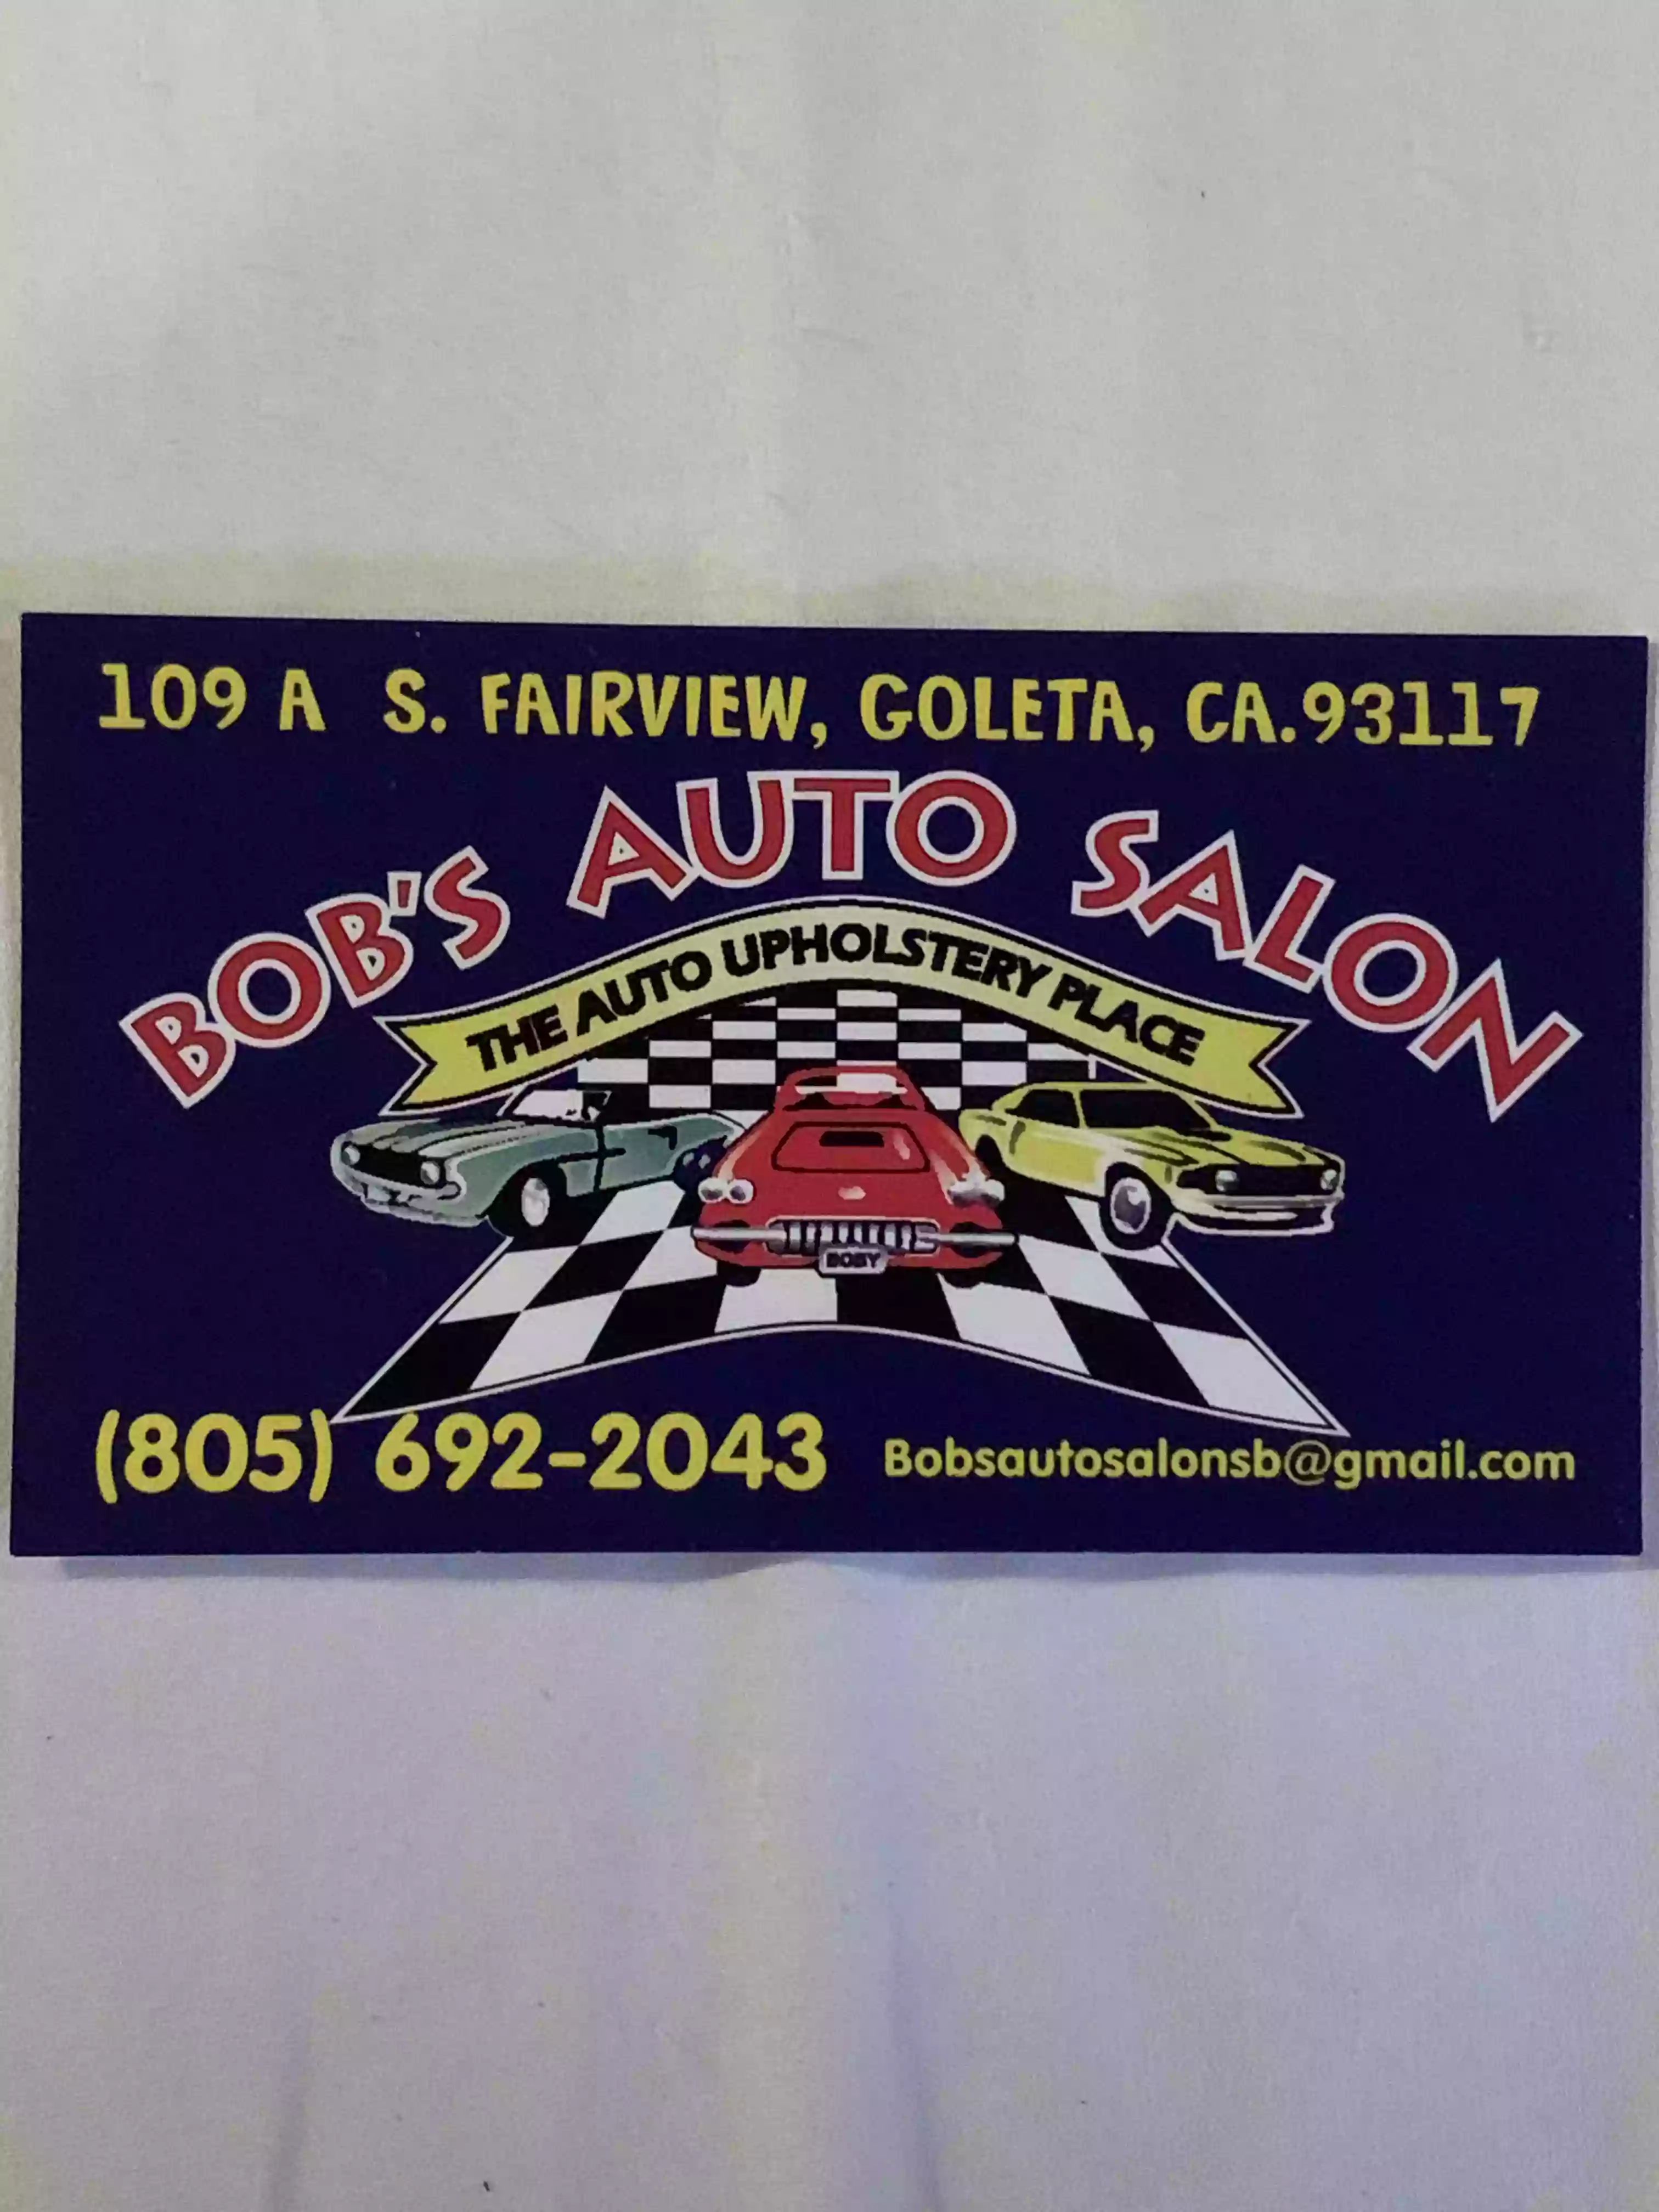 Bob's Auto Salon